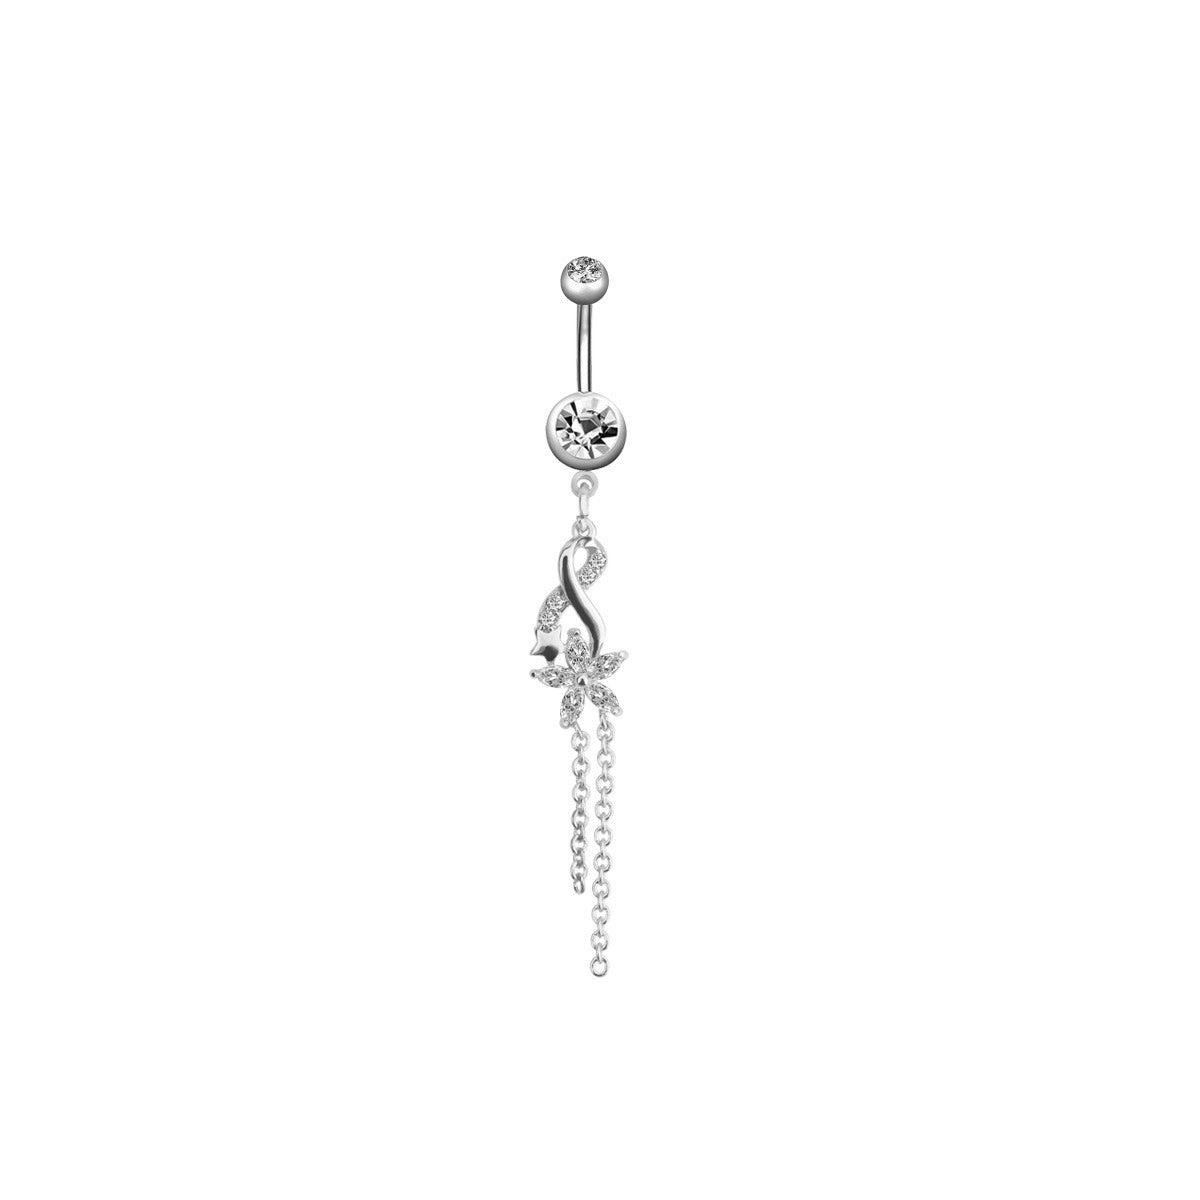 Chain Zircon Flower Pole Jewelry (Surgery Steel 316L)